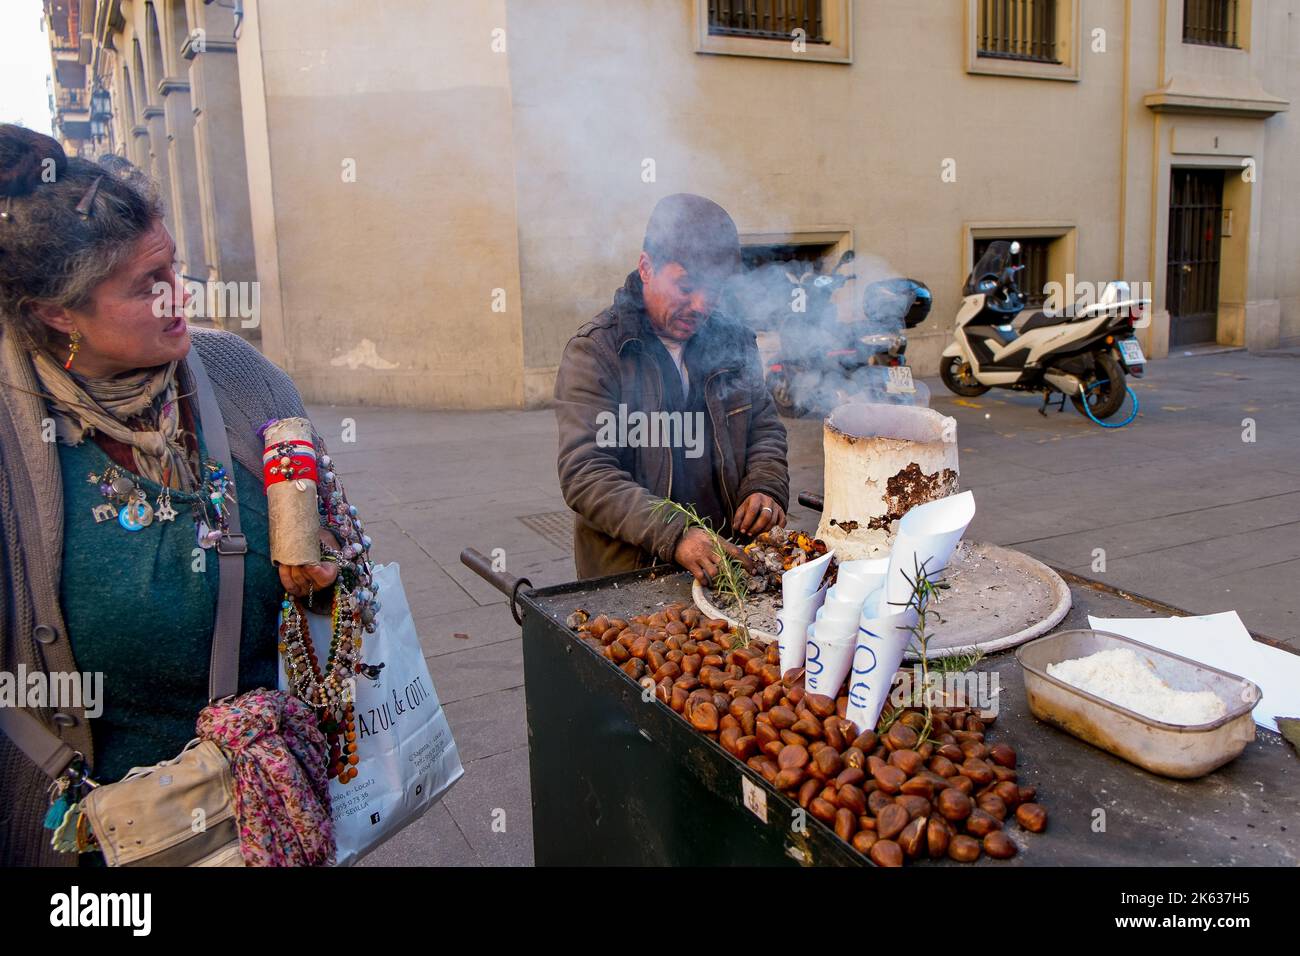 Homme torréfaction de noix, stand de nourriture de rue, Séville, Espagne Banque D'Images